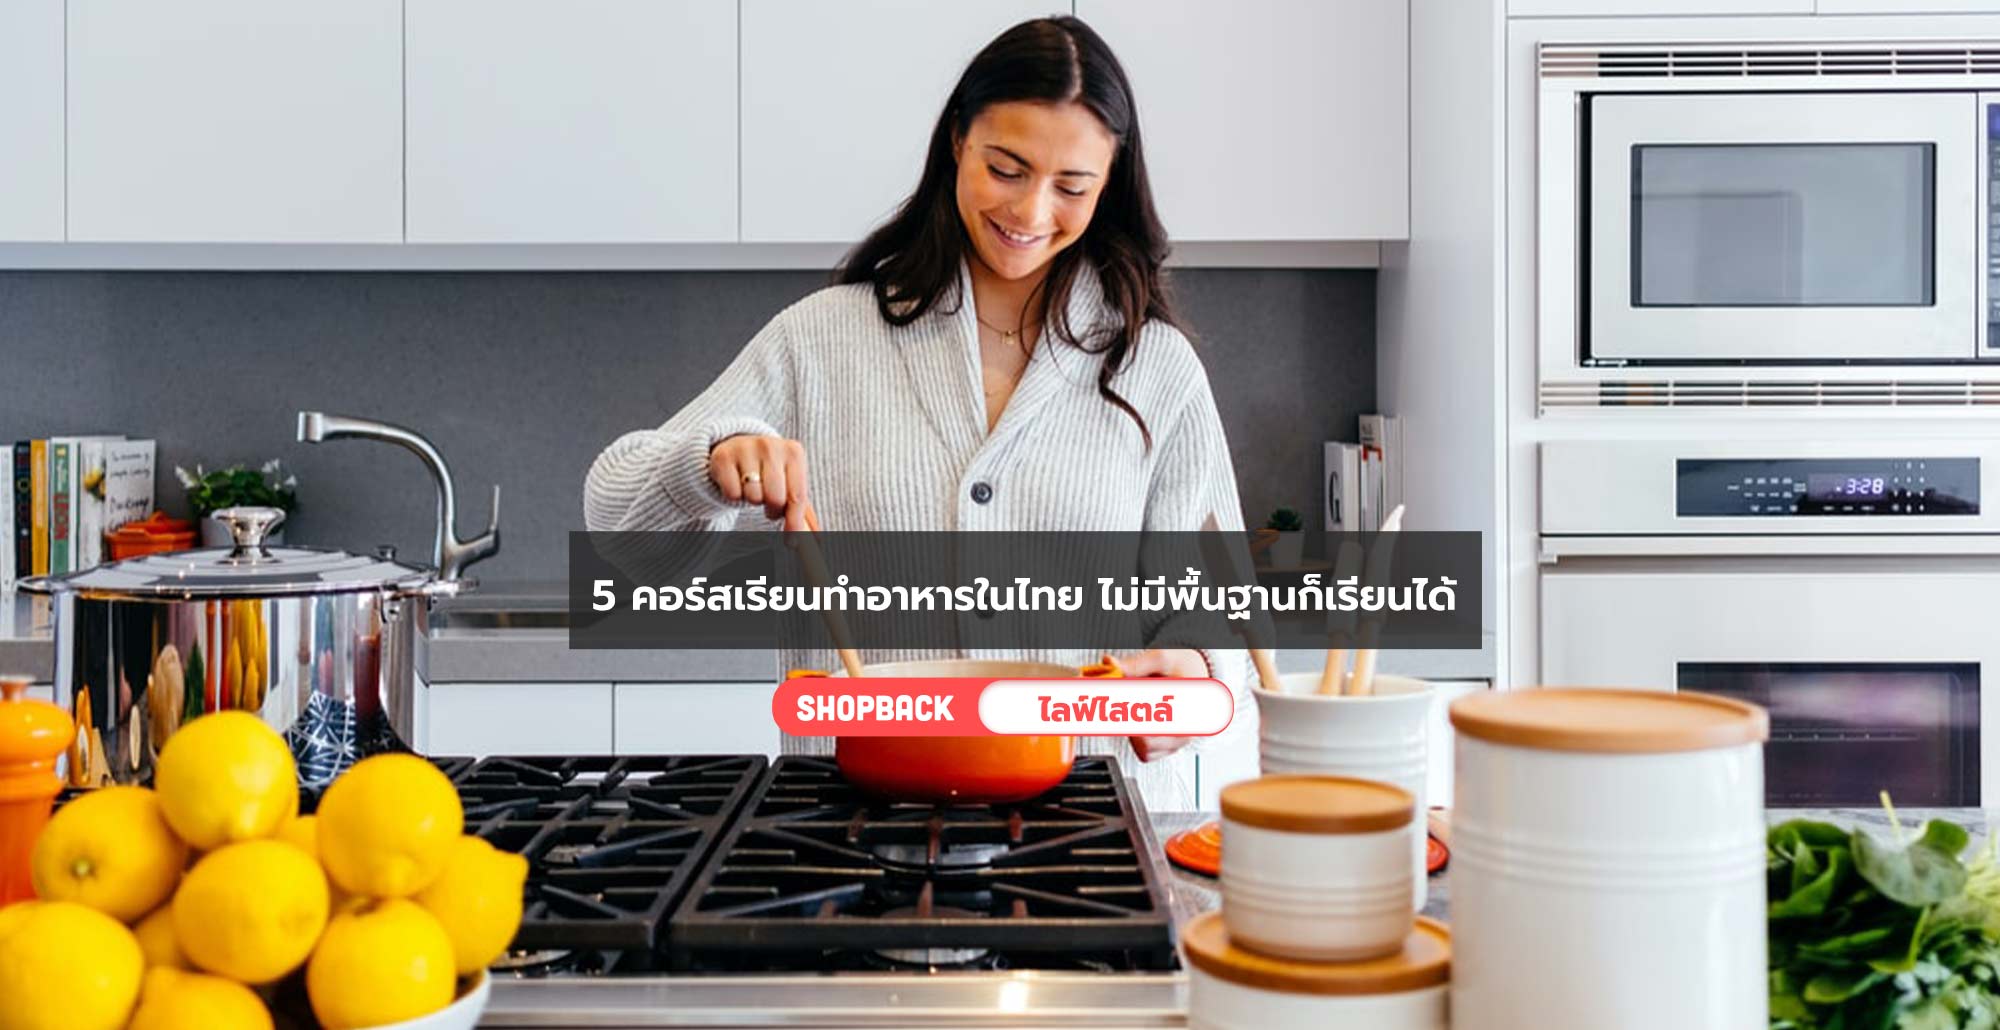 5 คอร์สเรียนทำอาหารในไทย ไม่มีพื้นฐาน มือใหม่เรียนได้